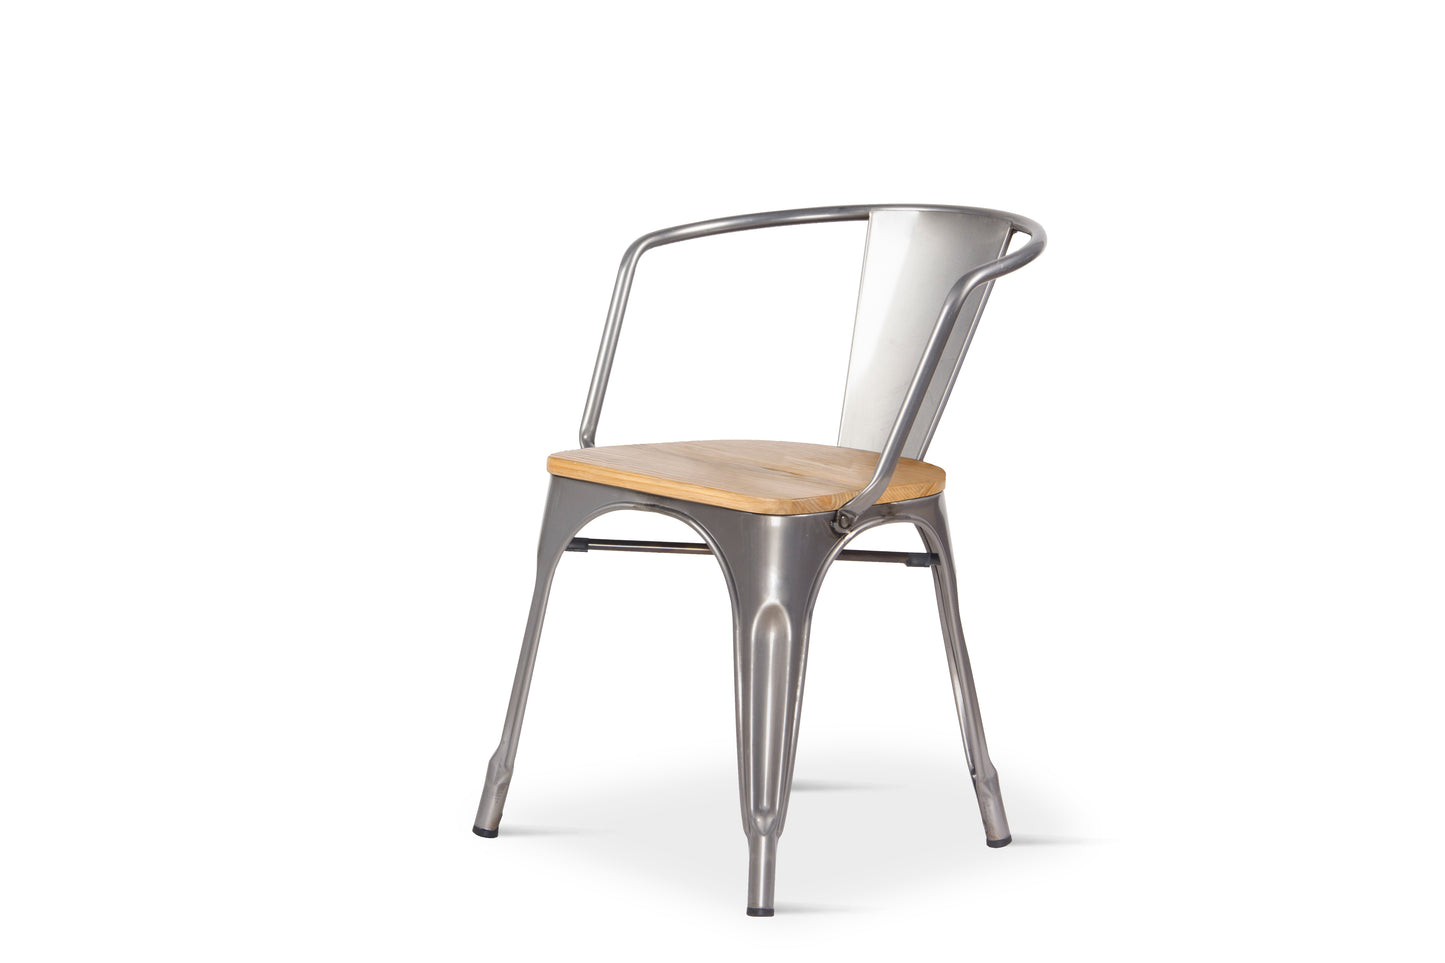 Lot de 4 chaises en métal brut style industriel avec assise en bois clair - Avec accoudoirs